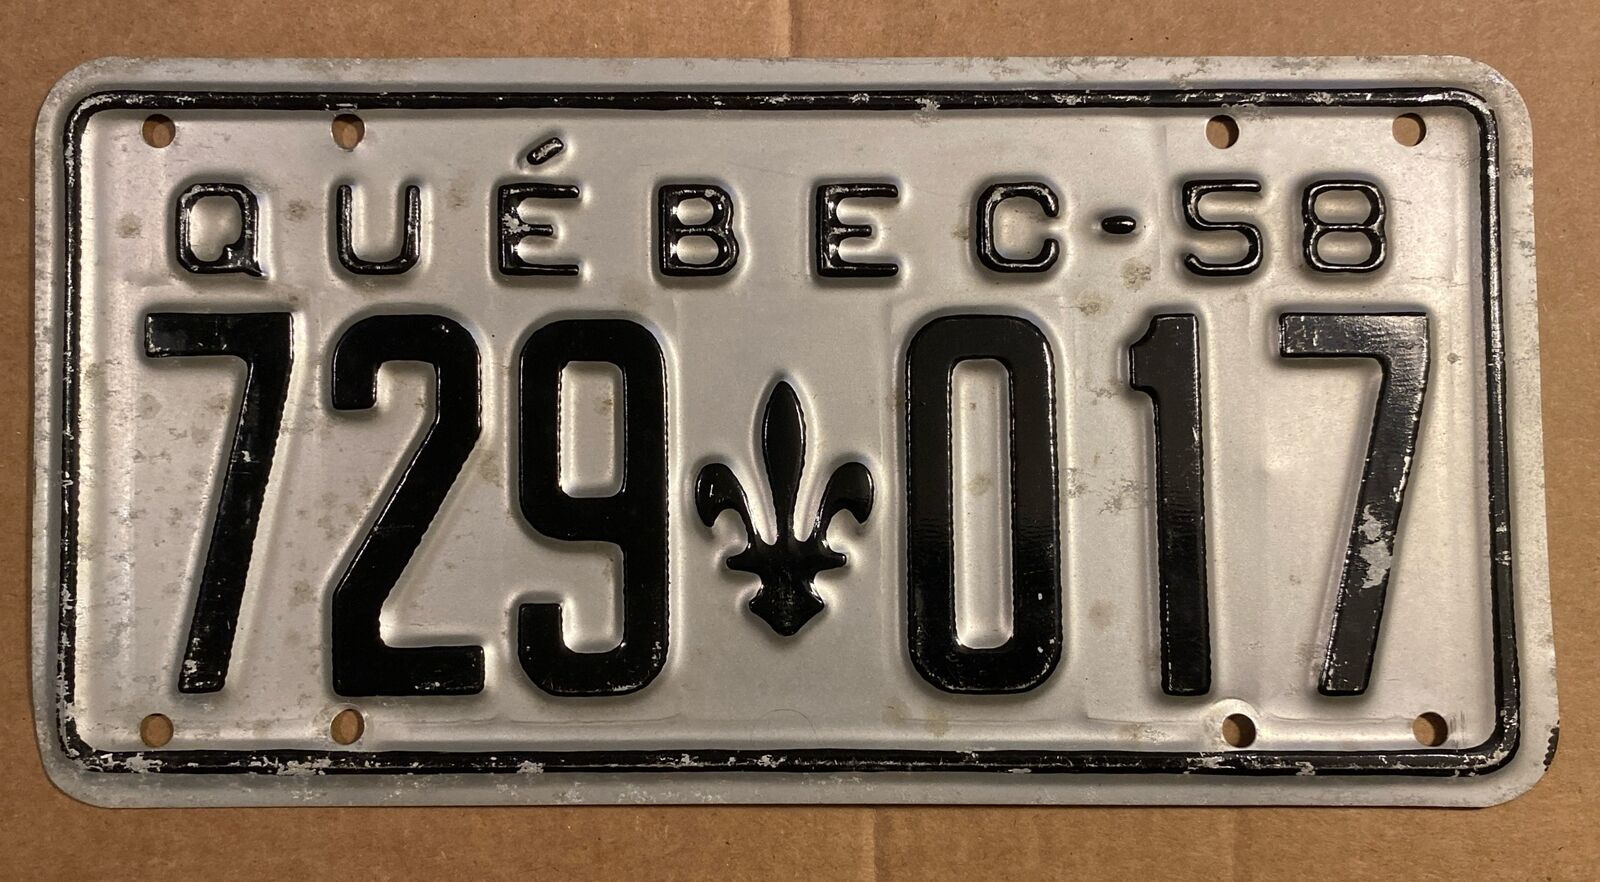 1958 Quebec Canada license plate, original used